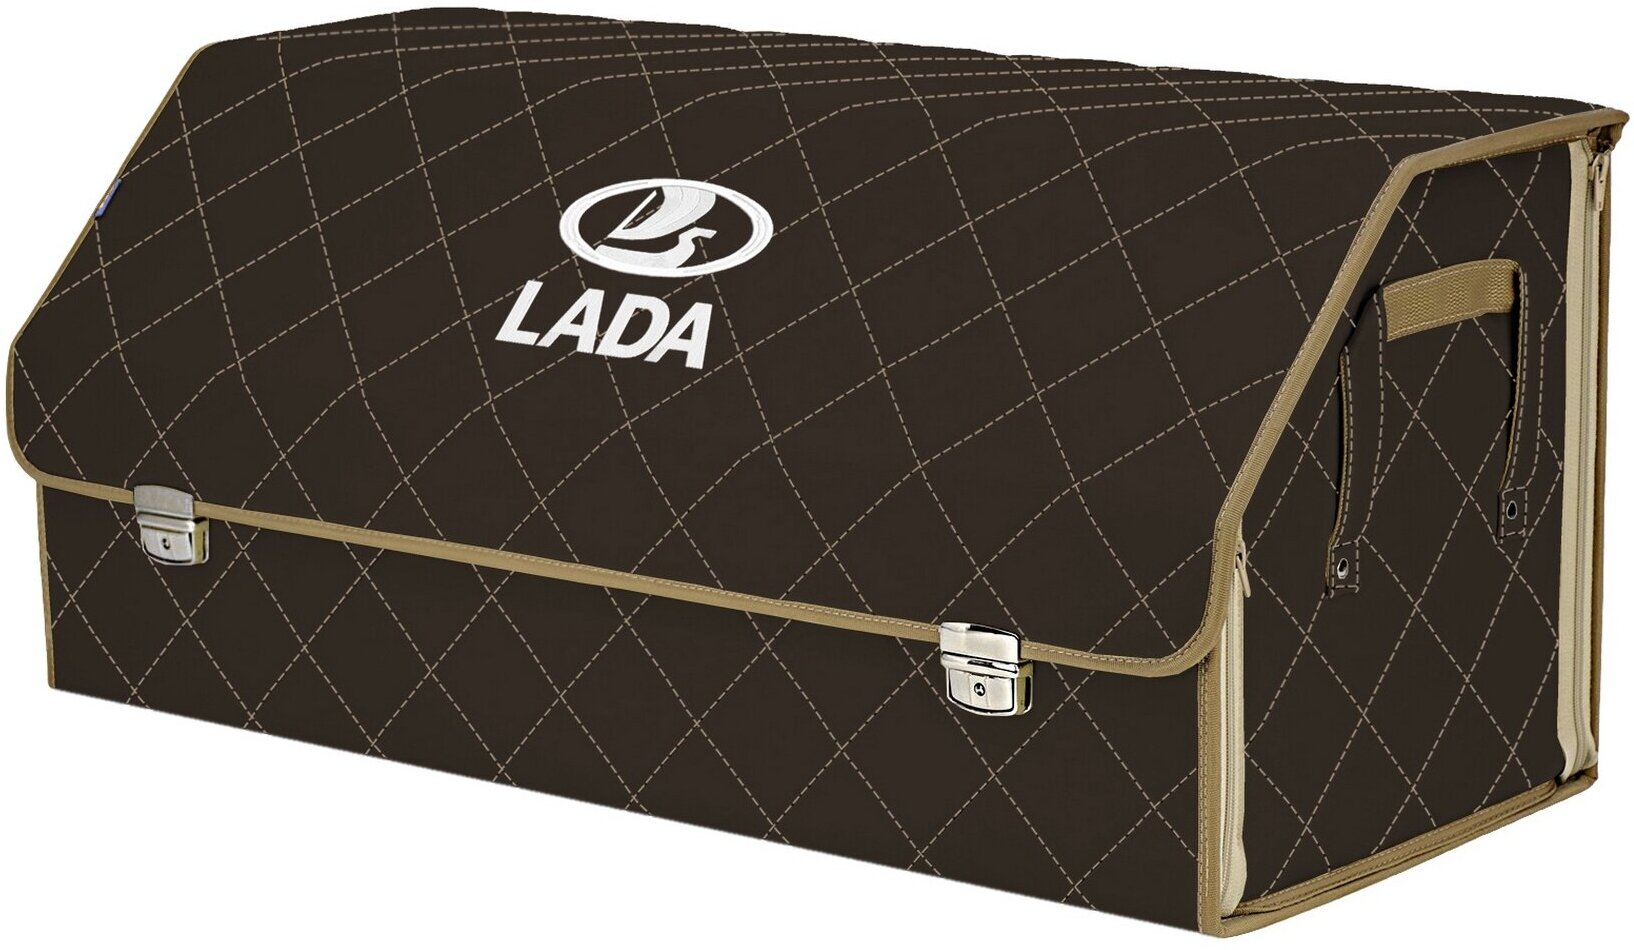 Органайзер-саквояж в багажник "Союз Премиум" (размер XXL). Цвет: коричневый с бежевой прострочкой Ромб и вышивкой LADA (лада).